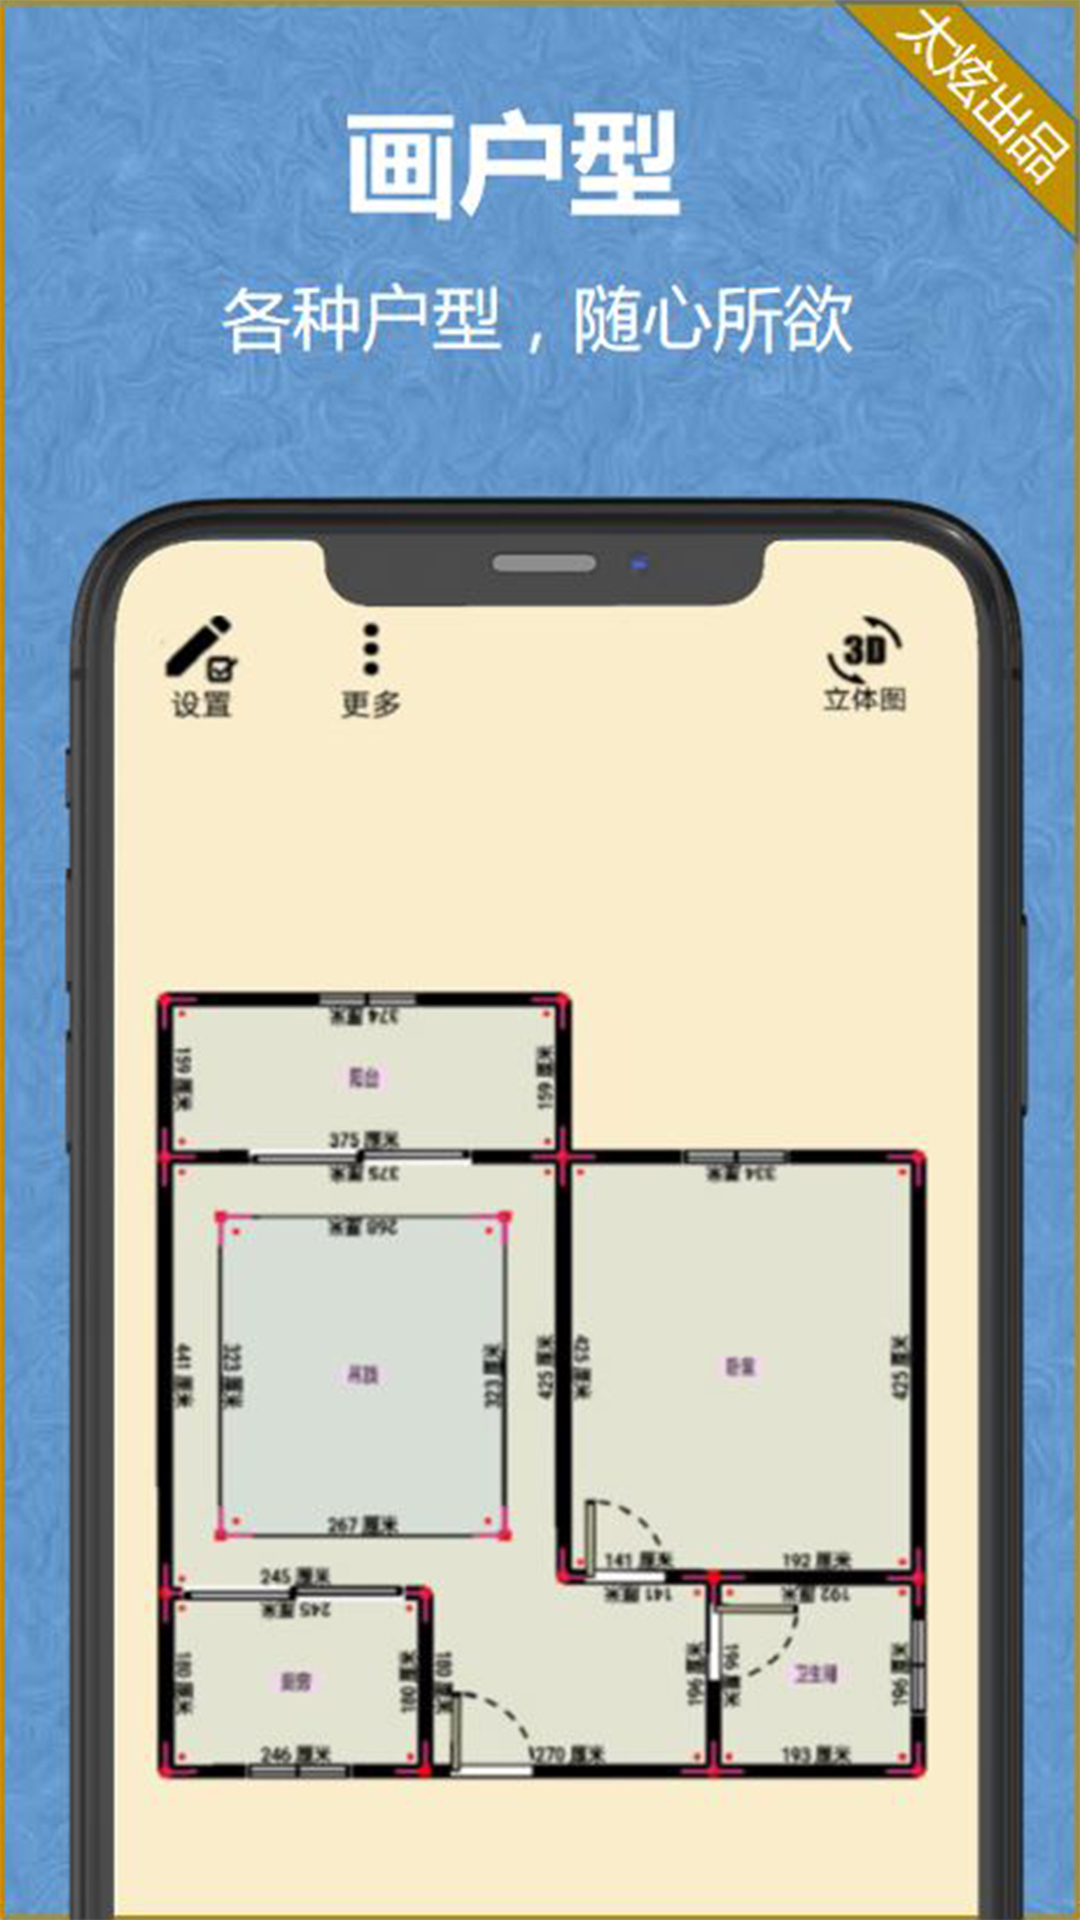 家炫-DIY房屋设计v1.0.69截图4